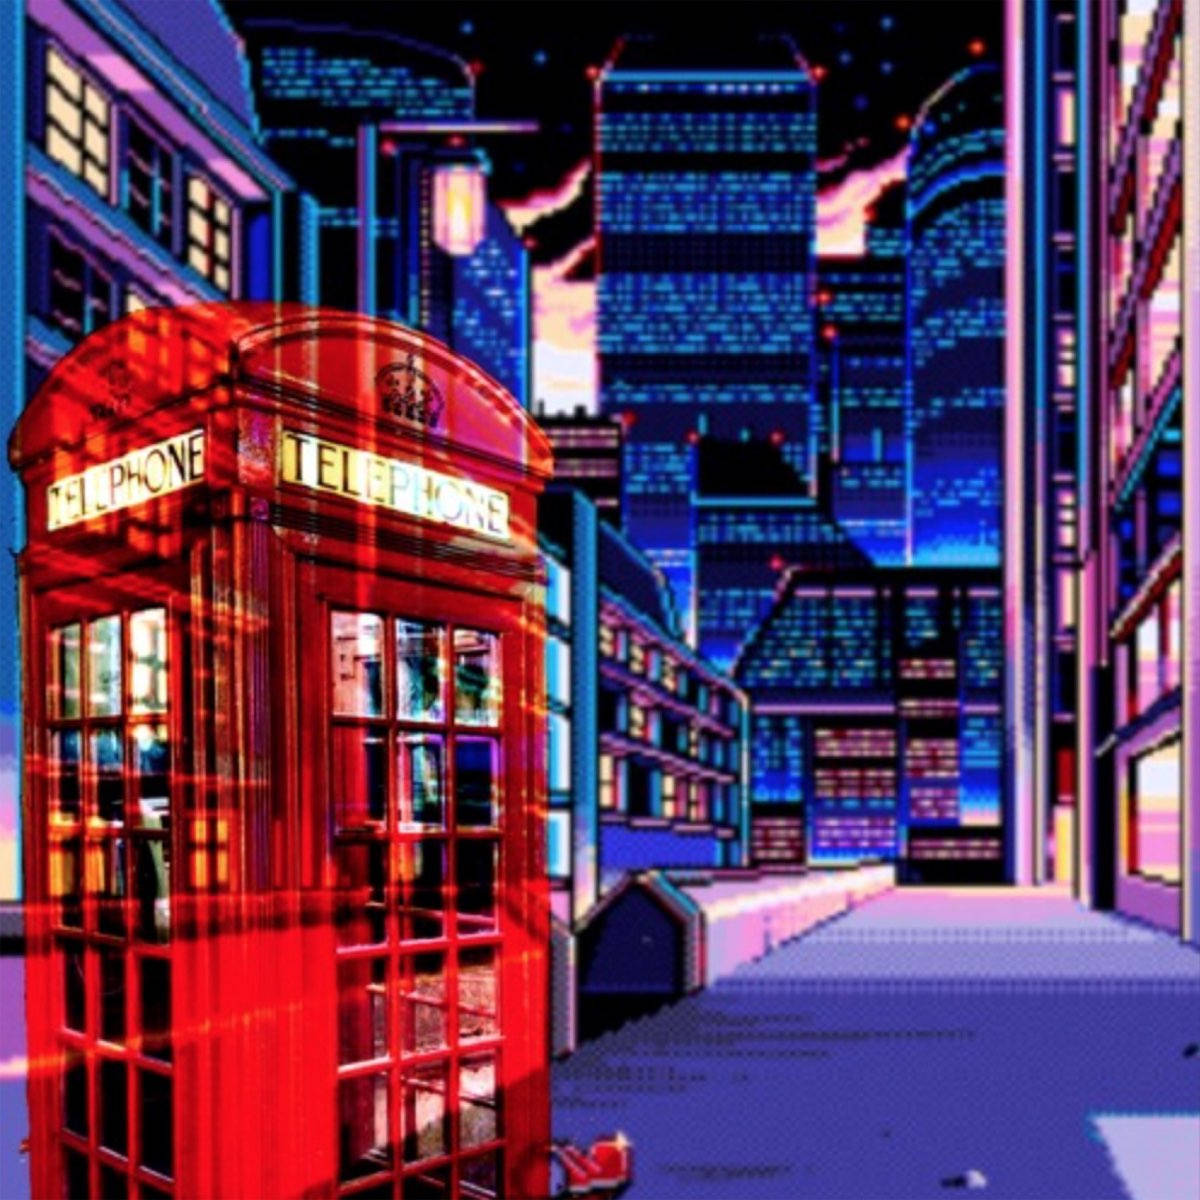 8 Bit Japan London Wallpaper